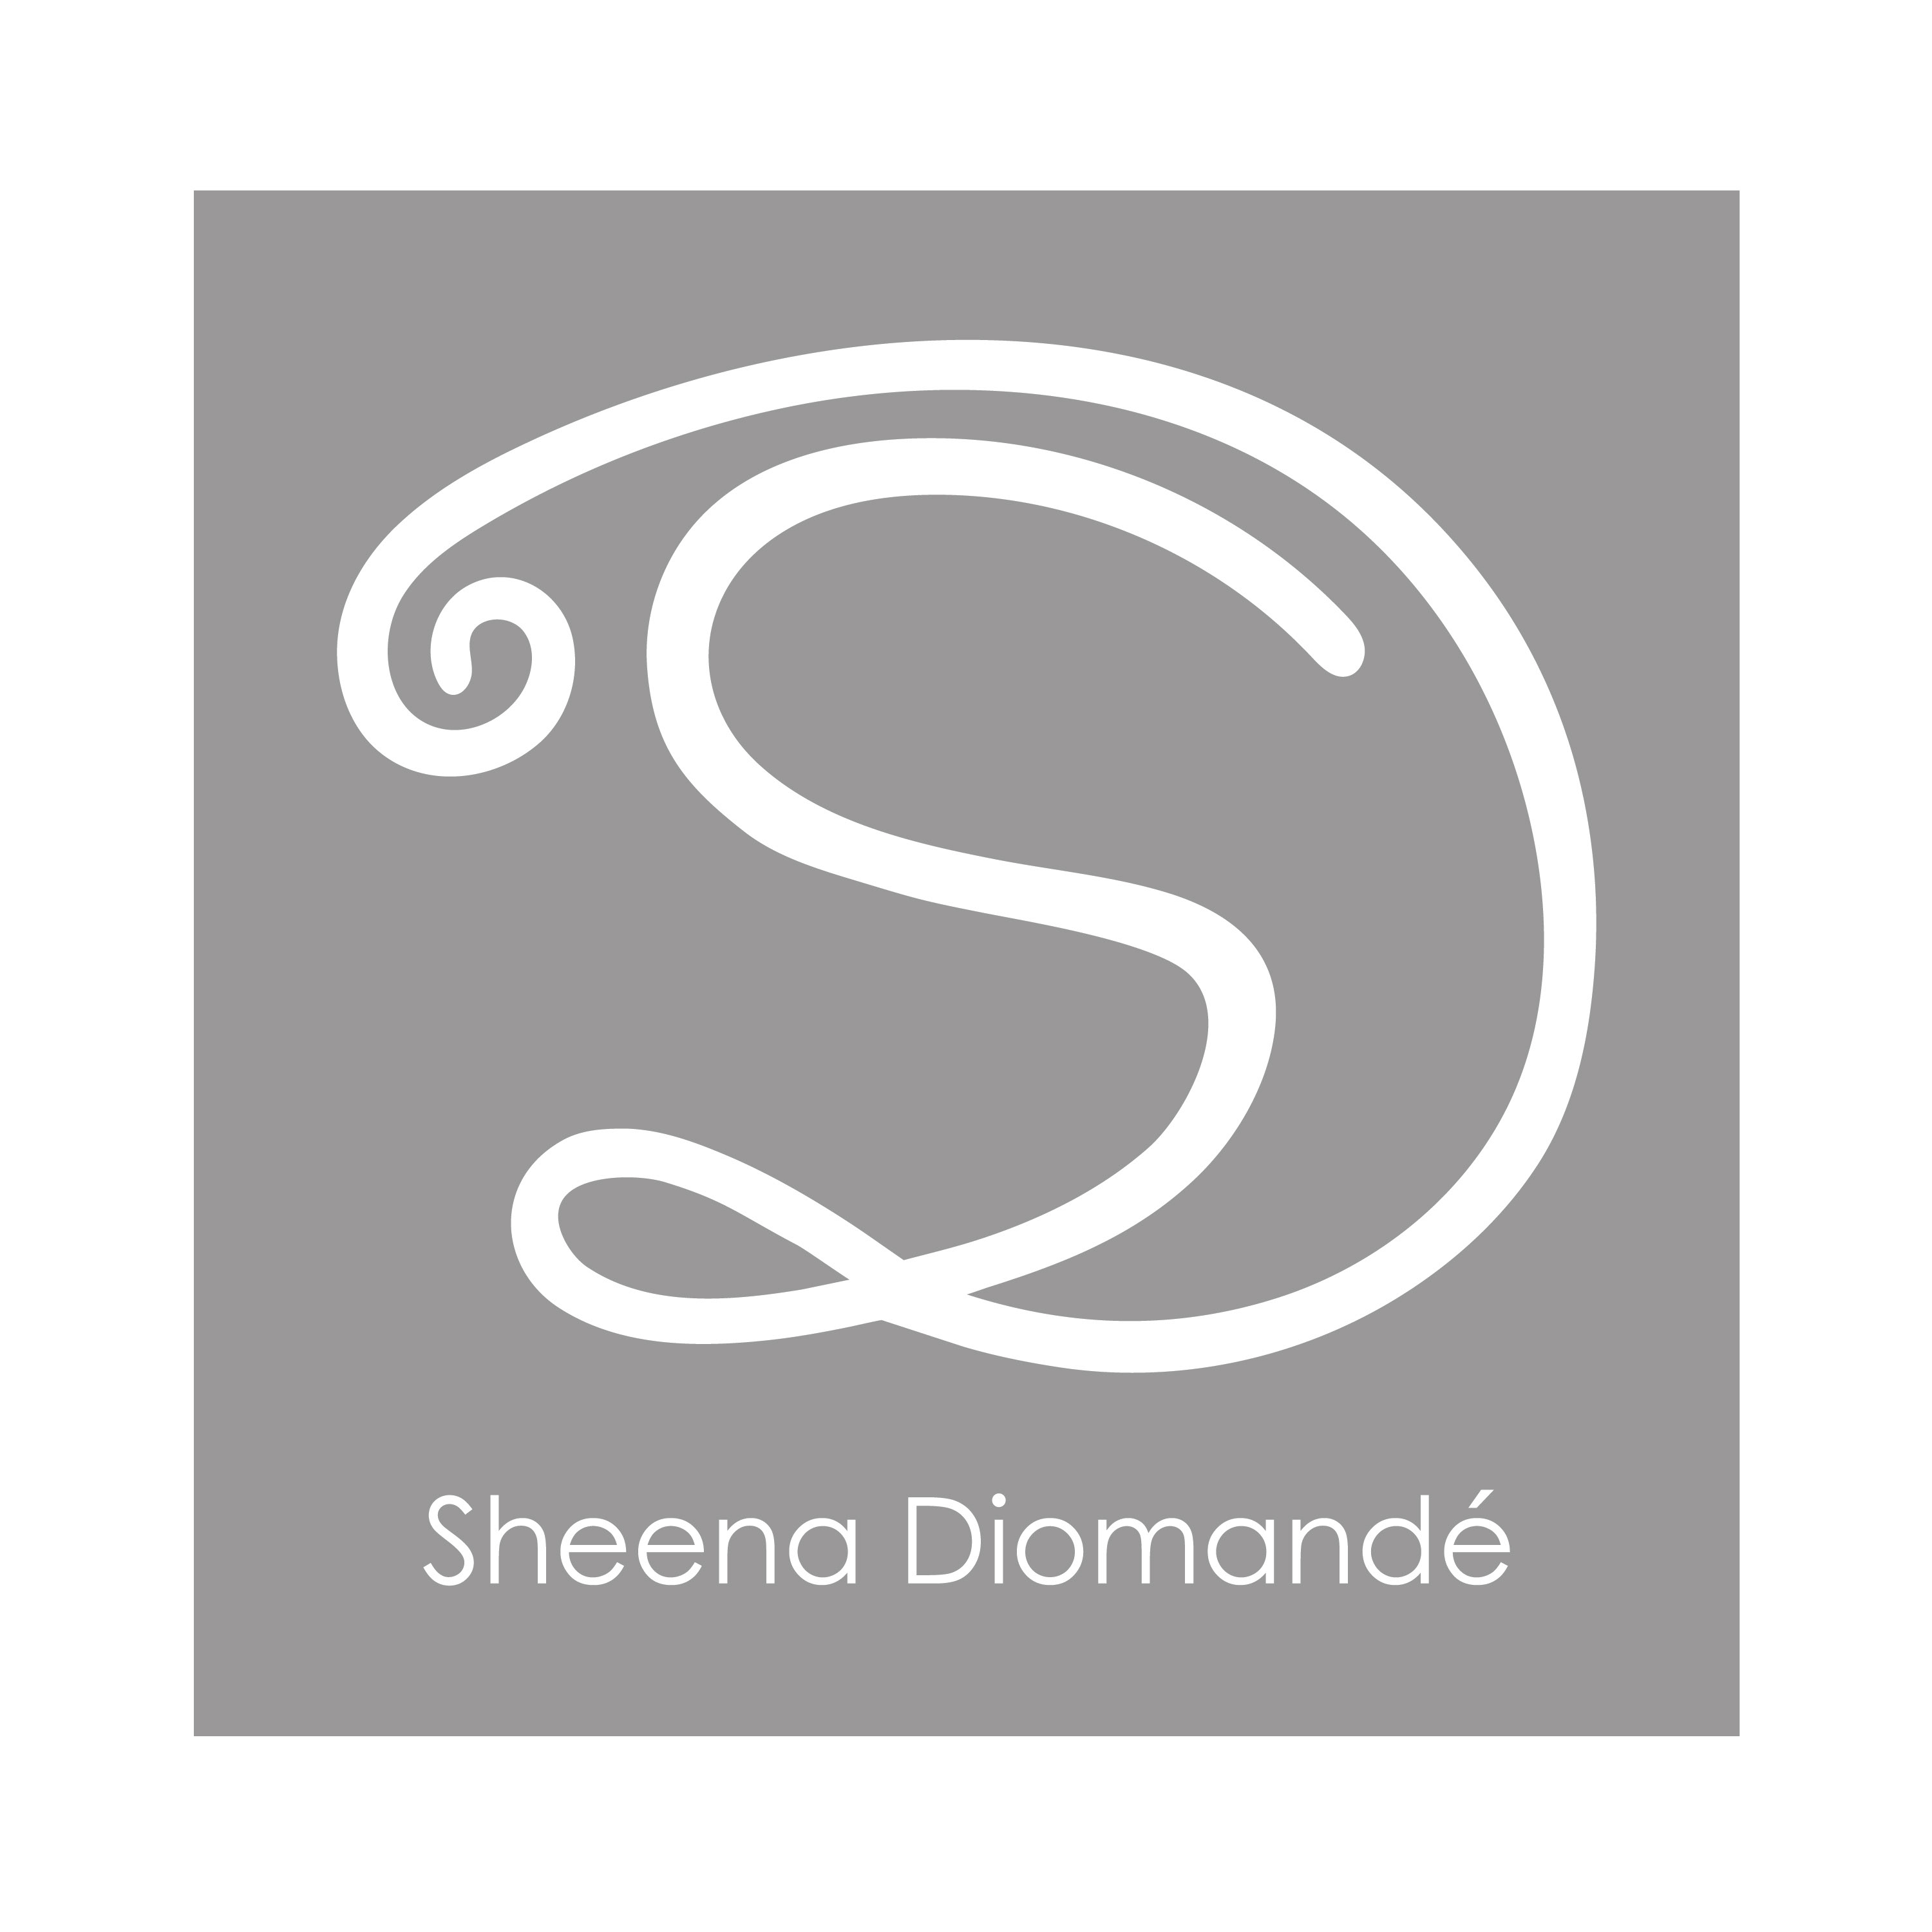 Sheena-Soraya Diomande